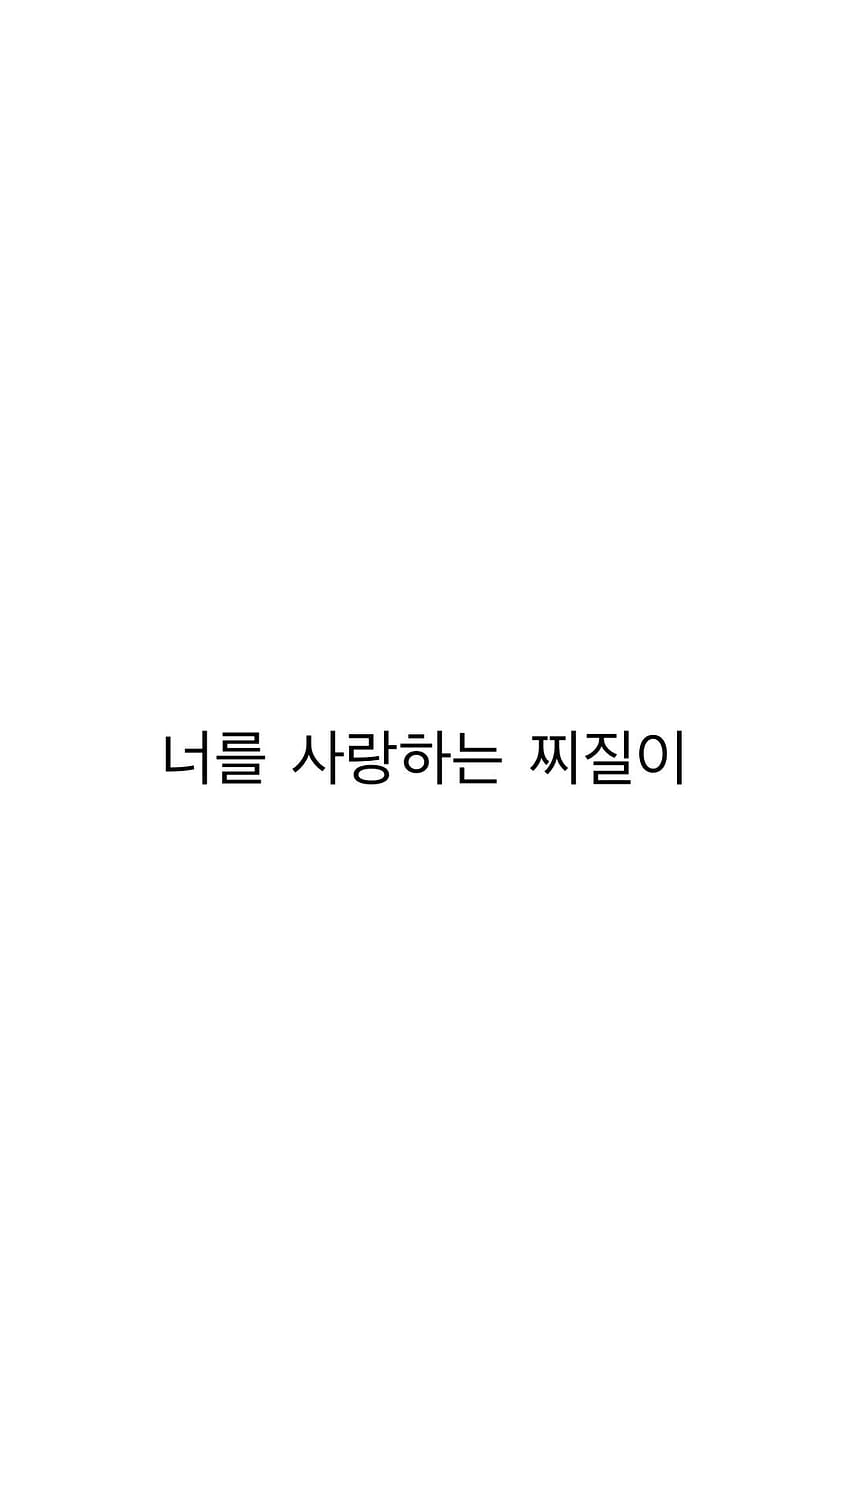 너를 사랑하는 찌질이 “I'm a loser who loves you.” Shine, korean writing HD phone wallpaper